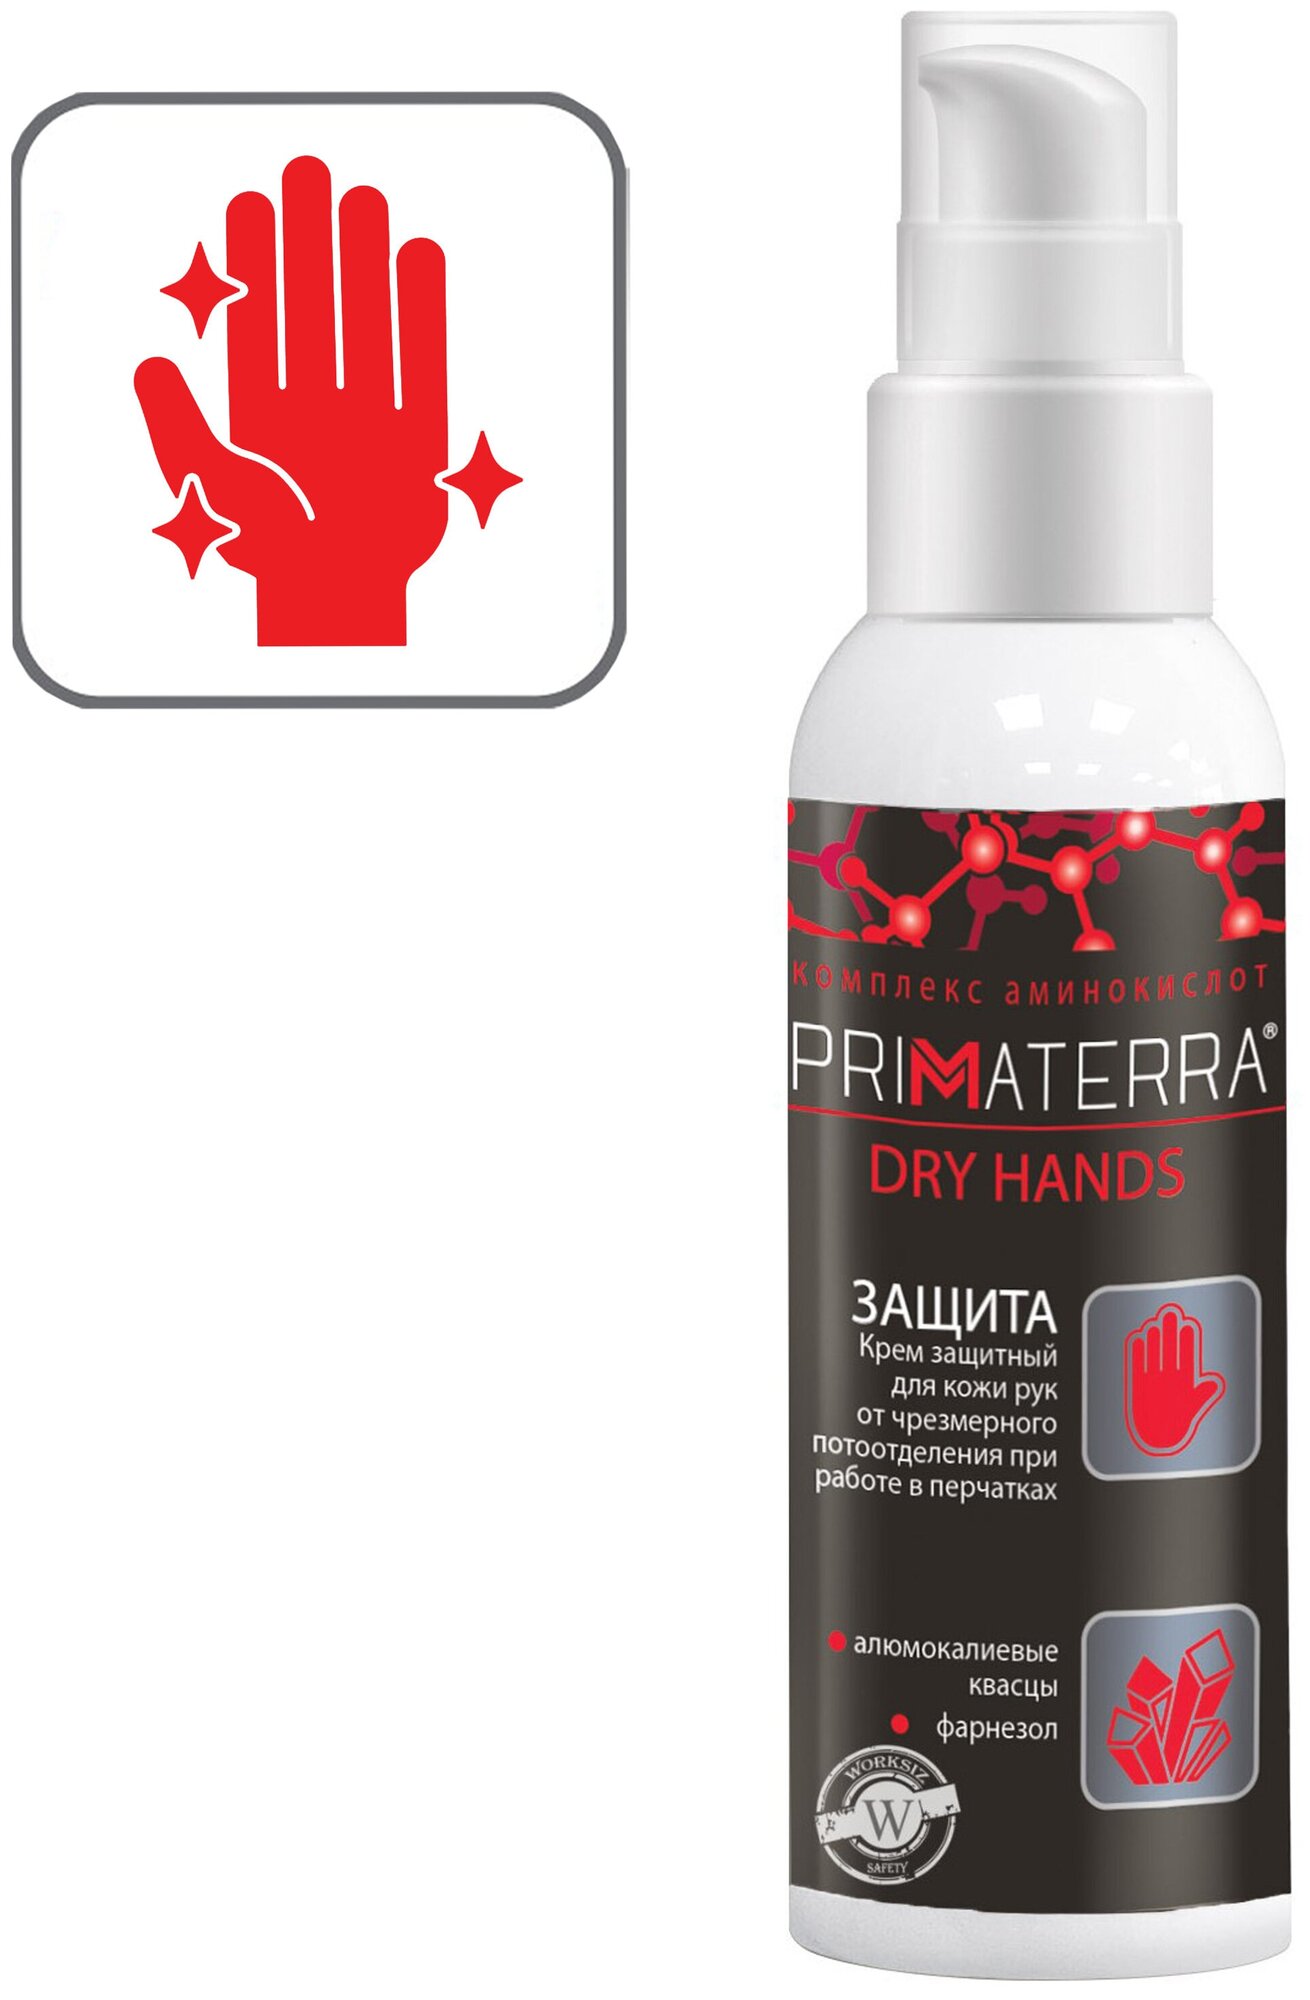 Средство ( крем ) PRIMATERRA DRY HANDS для кожи рук от чрезмерного потоотделения/потливости при работе в перчатках, 100мл.